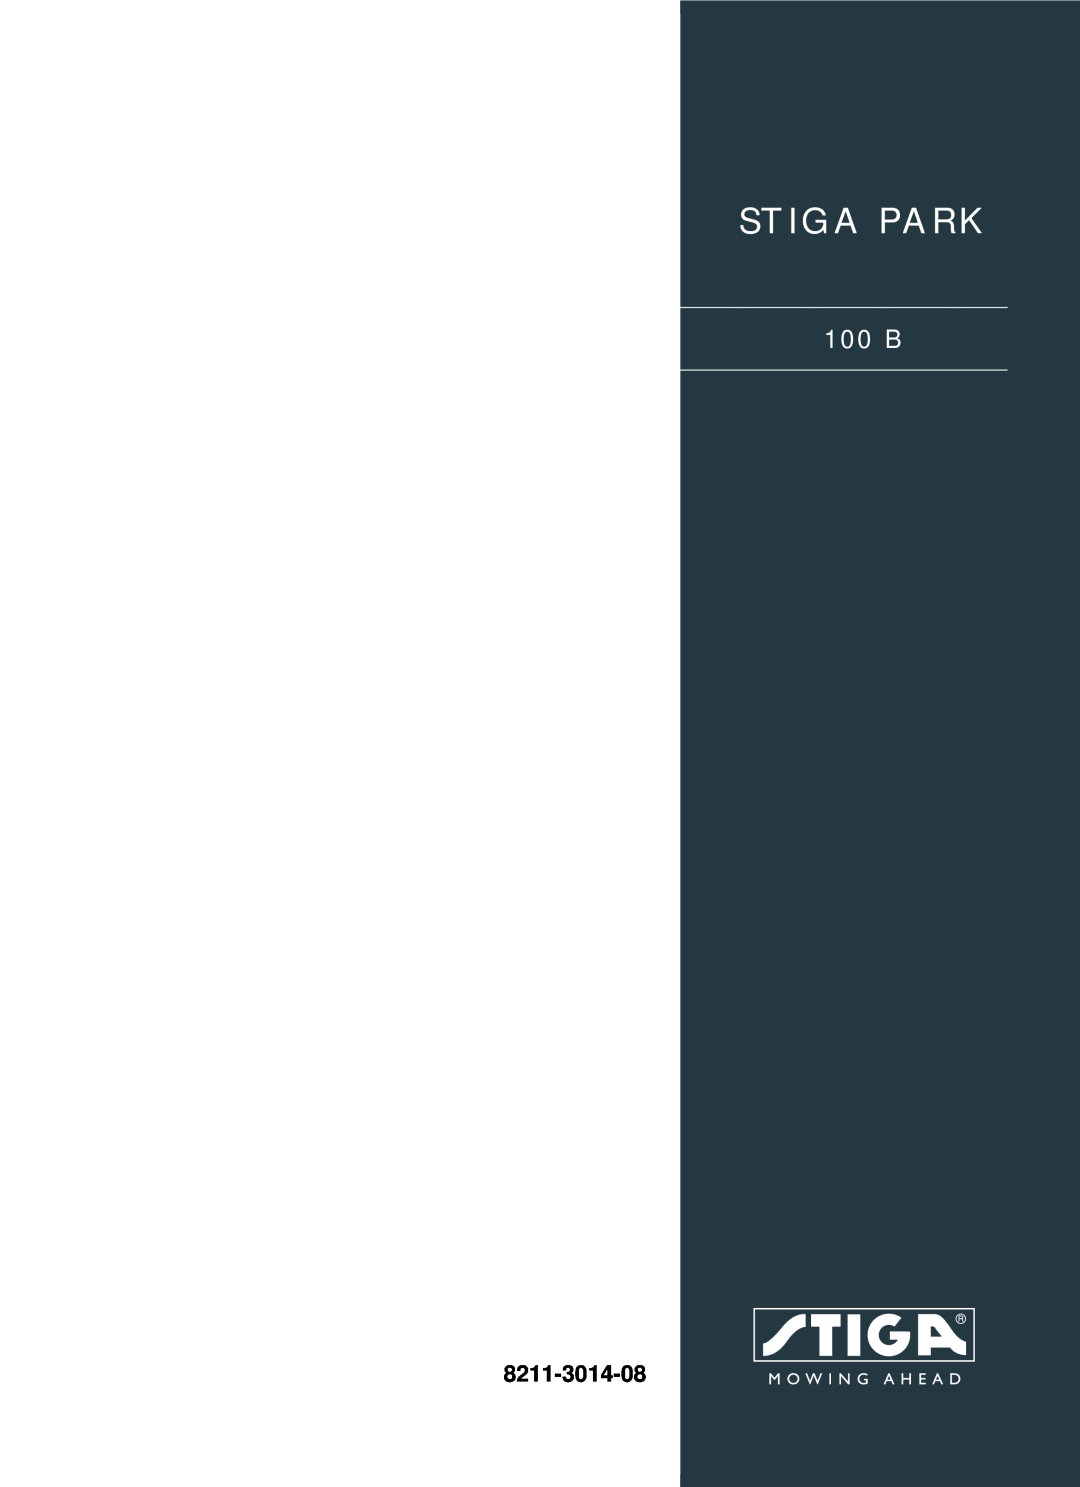 Stiga 100 B manual Stiga Park, 8211-3014-08 